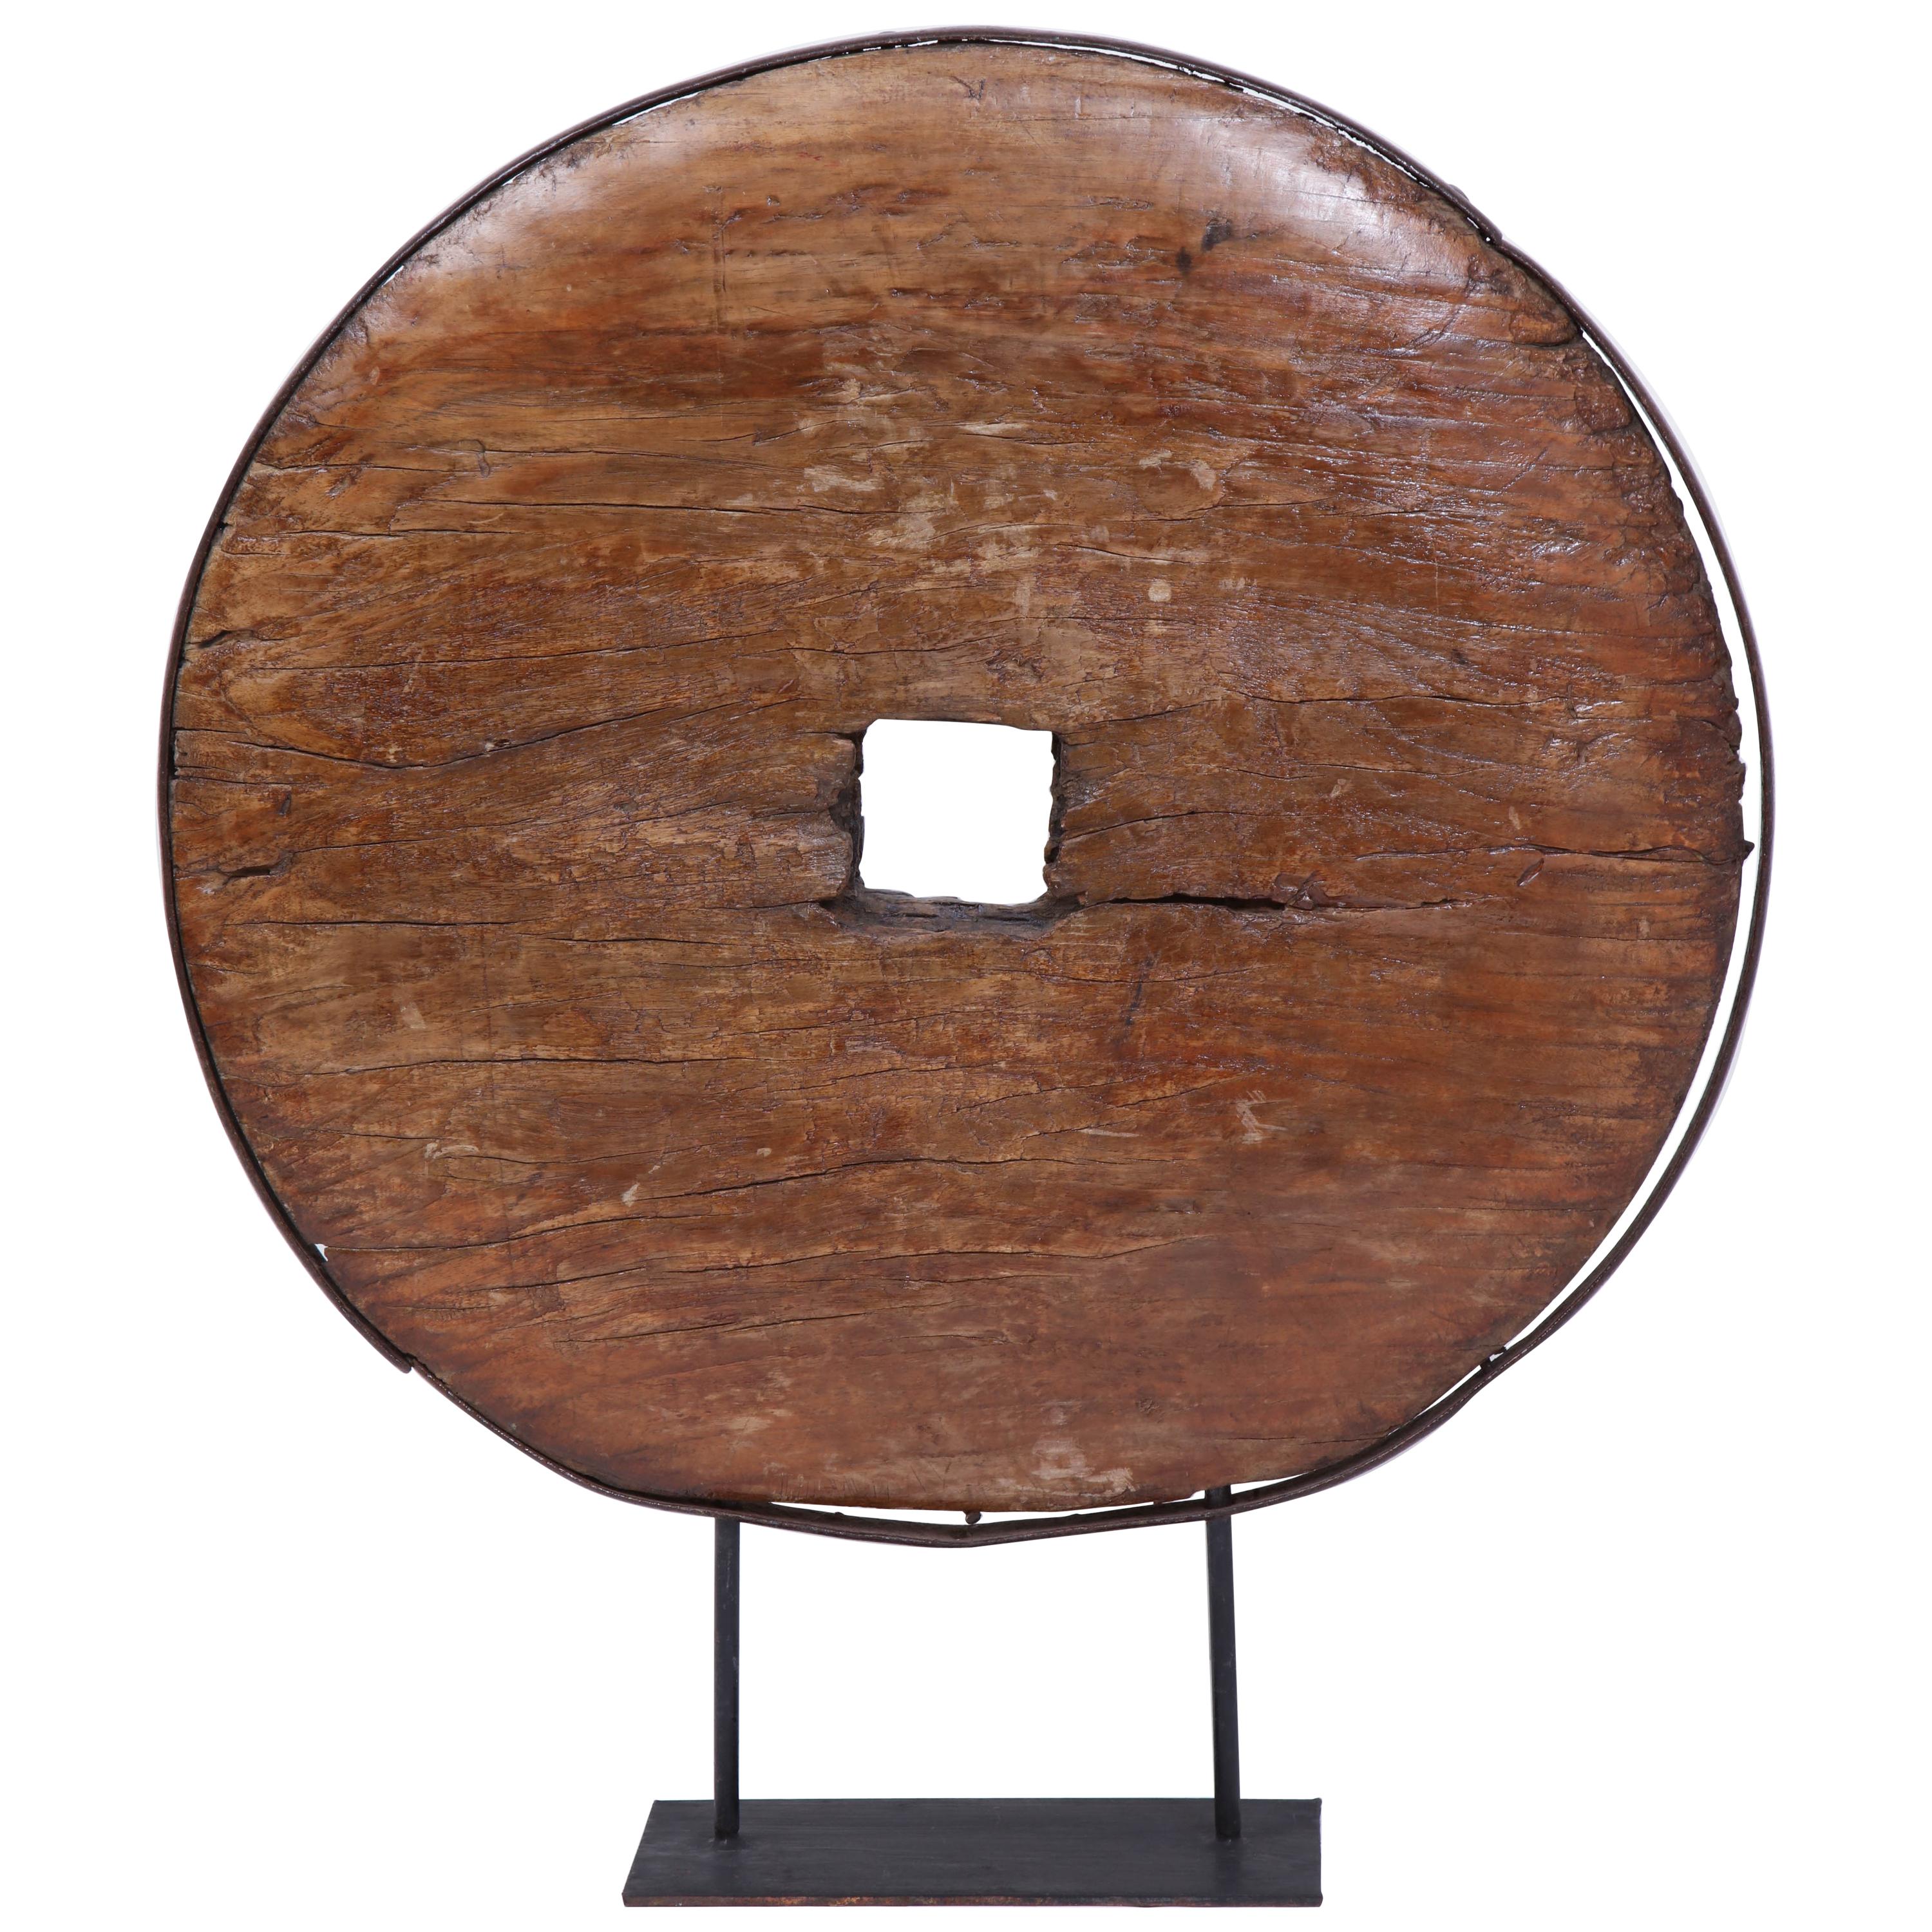 Großes afrikanisches Rad aus dem frühen 18. Jahrhundert